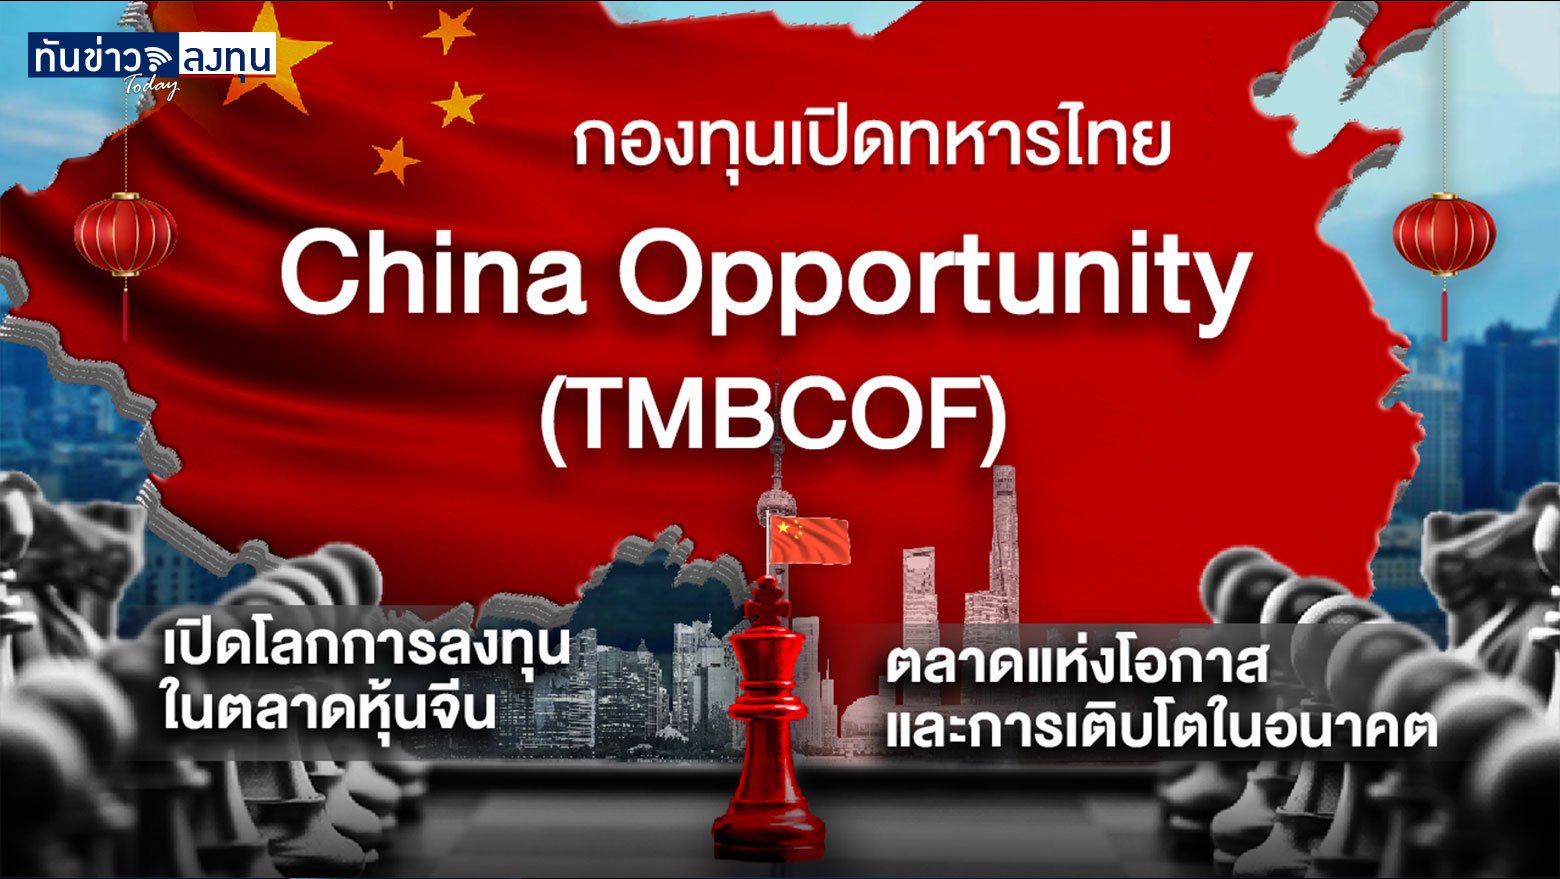 กองทุนเปิดทหารไทย China Opportunity (TMBCOF)